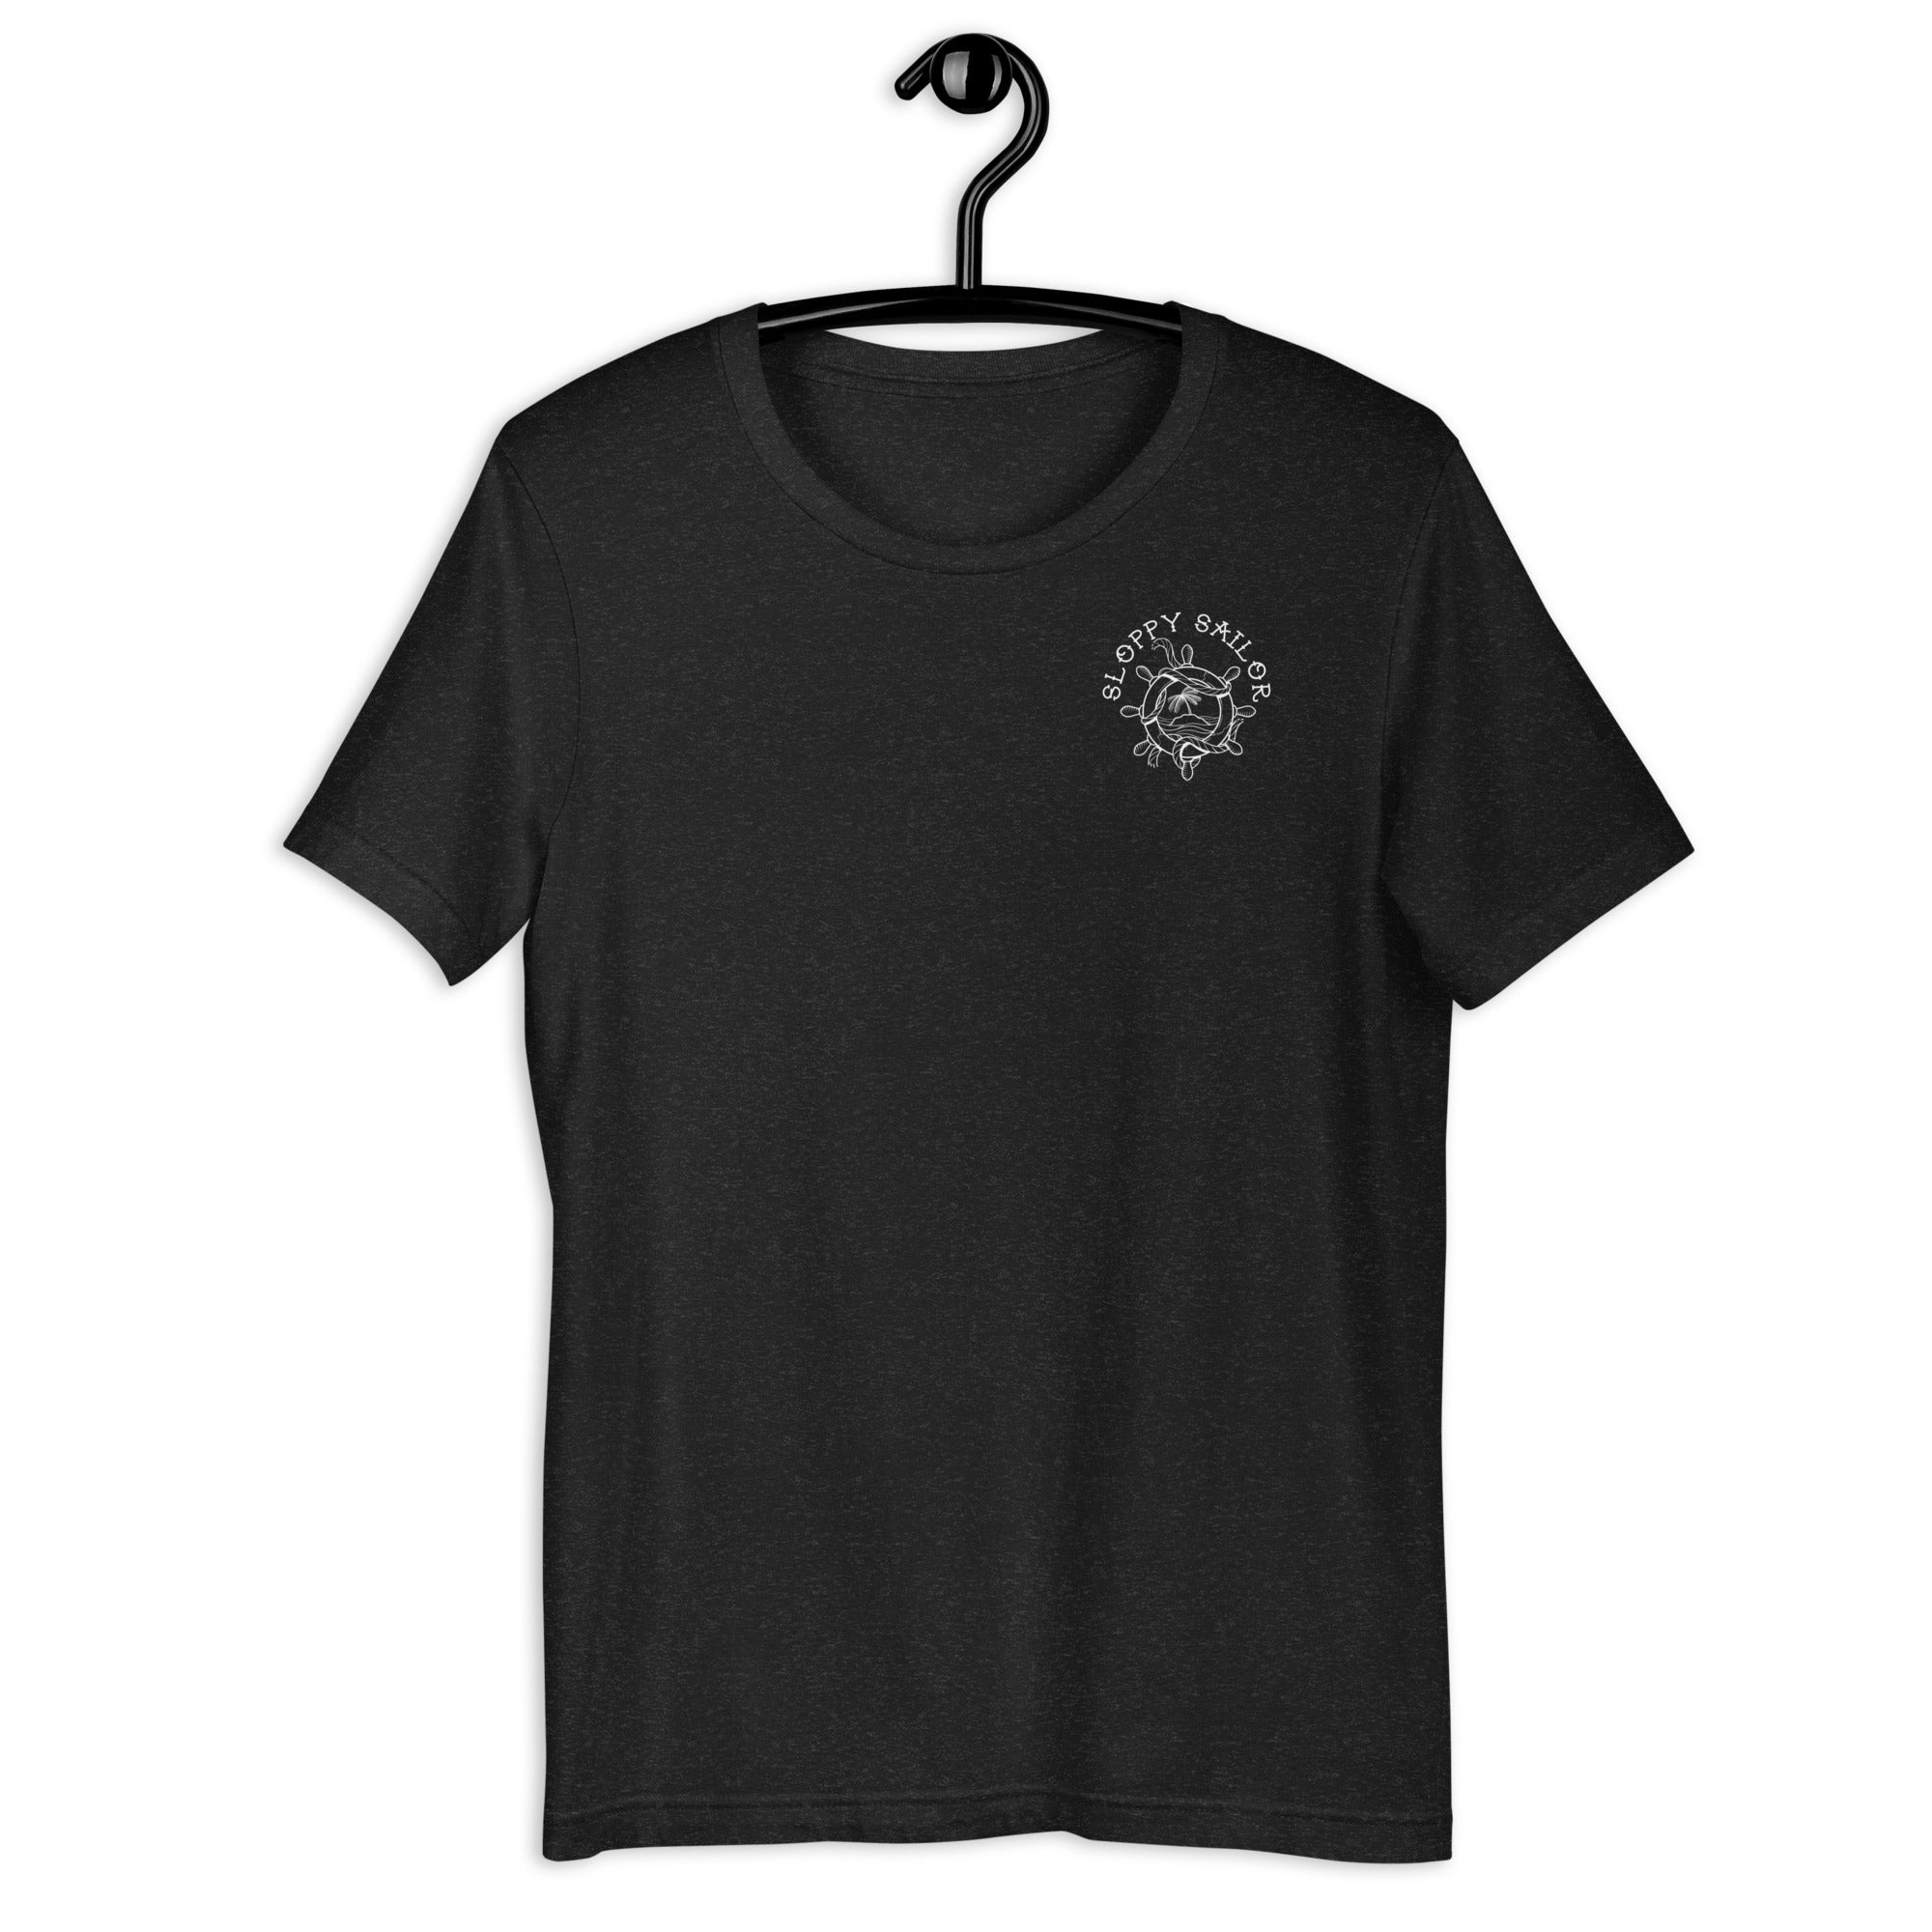 Geboren, um Premium-T-Shirt mit dem „BACK LOGO“ zu gewinnen